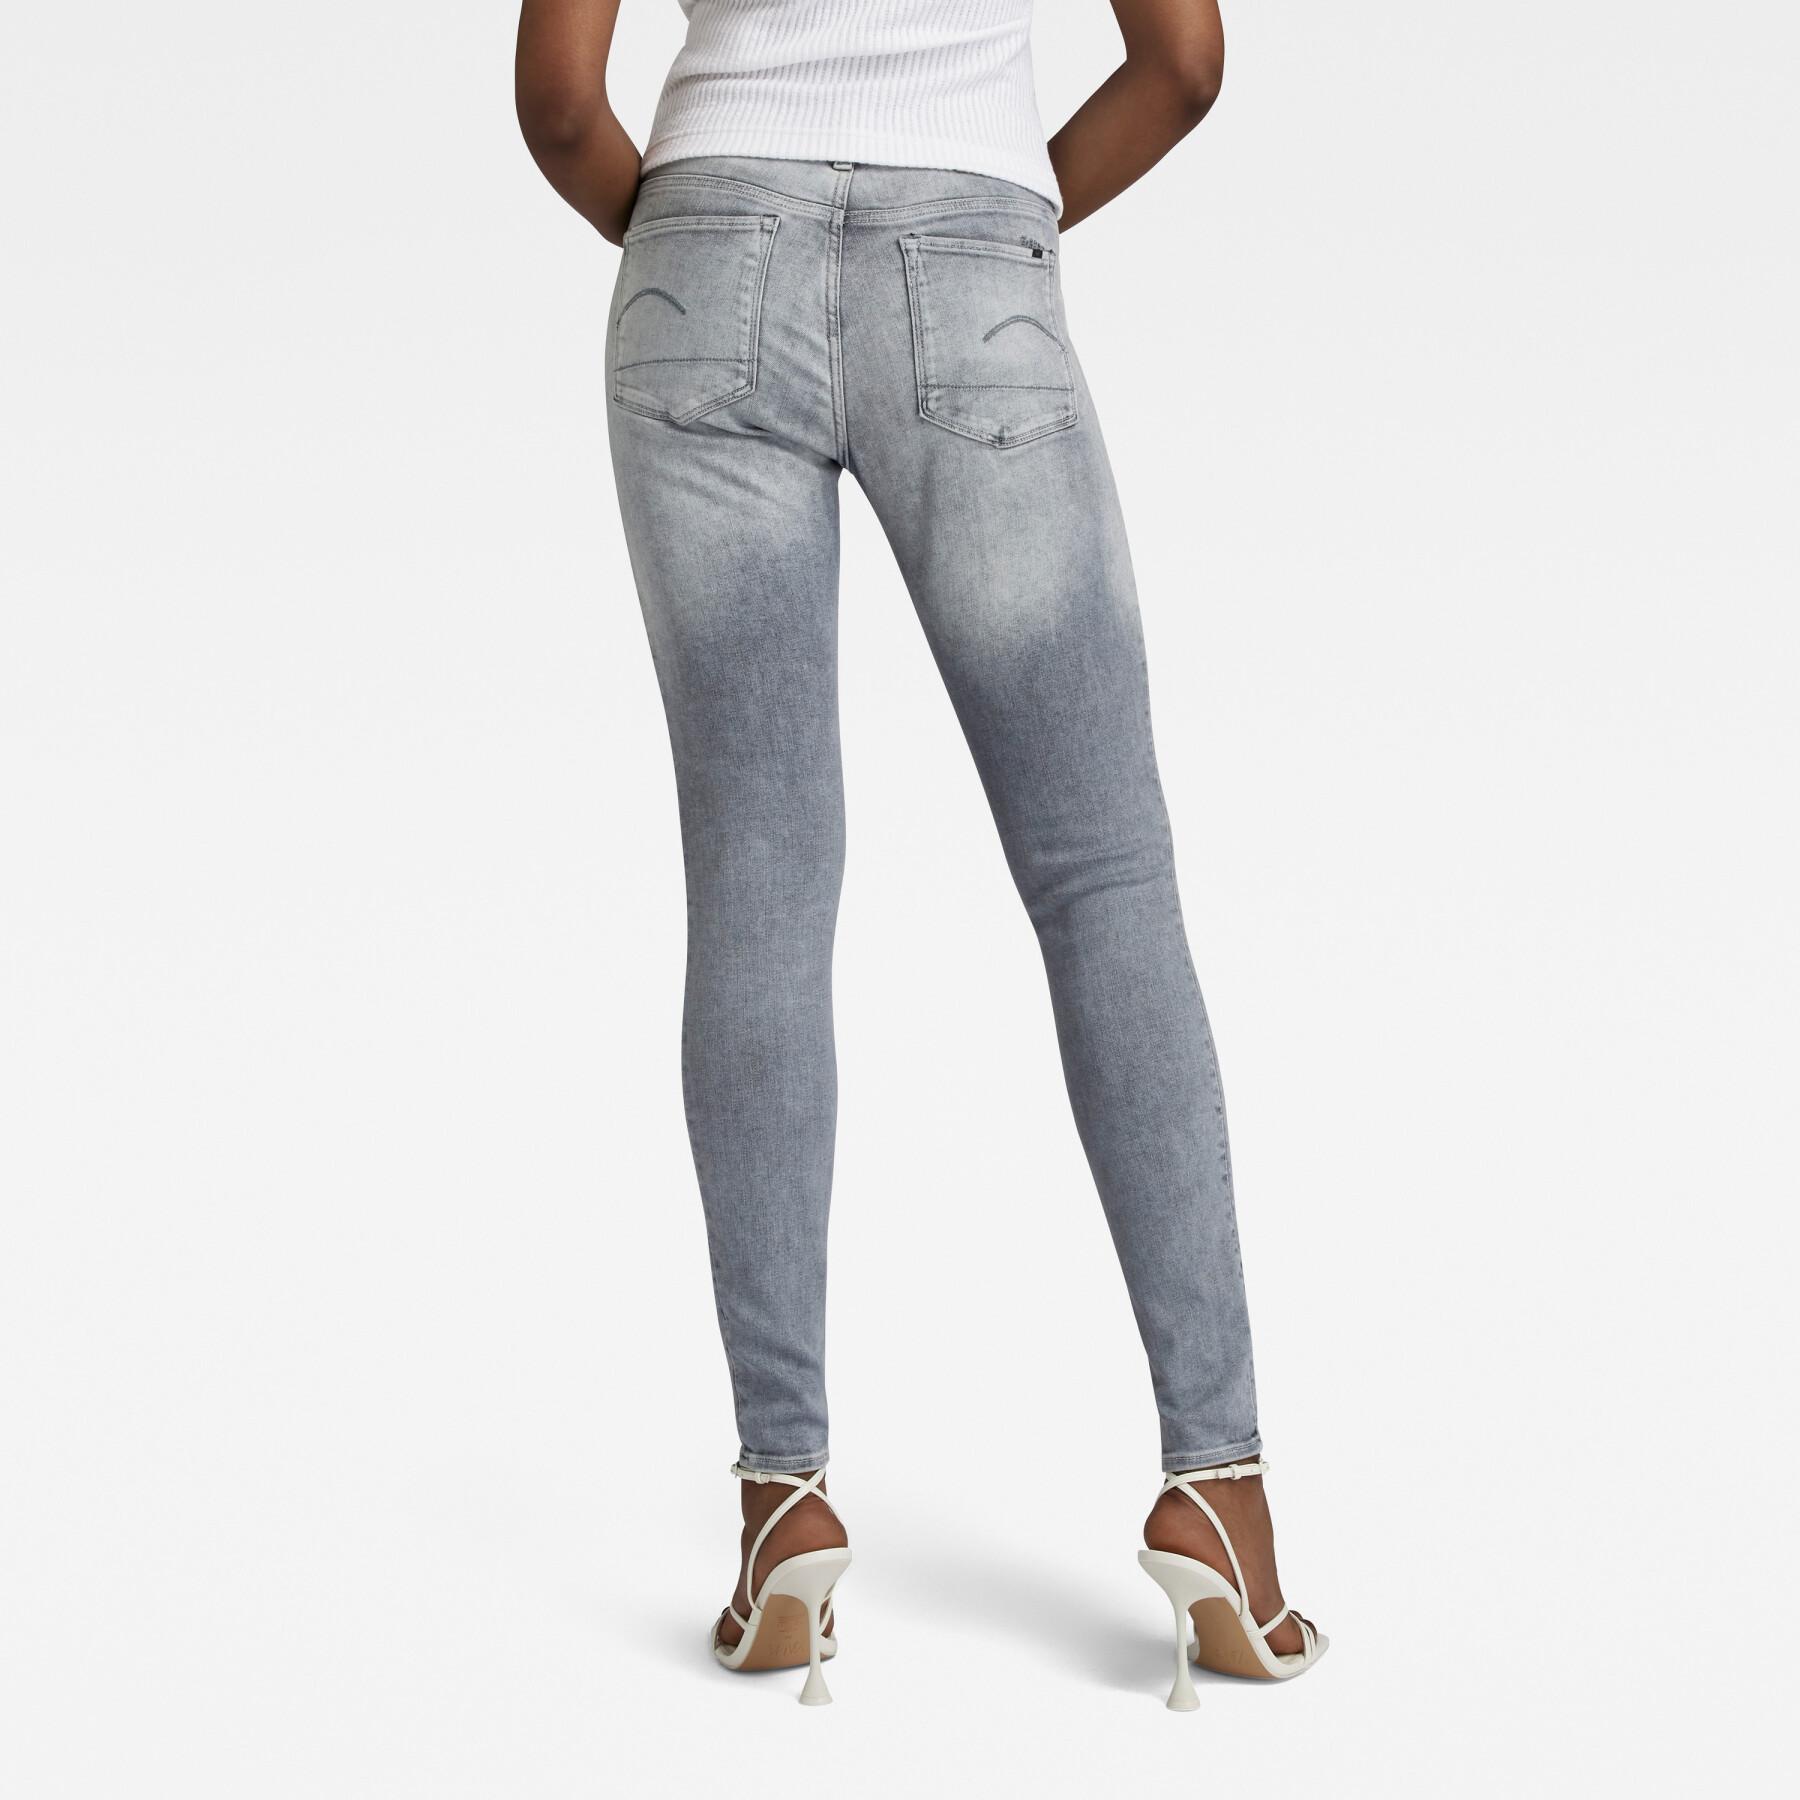 Jeans skinny femme G-Star 3301